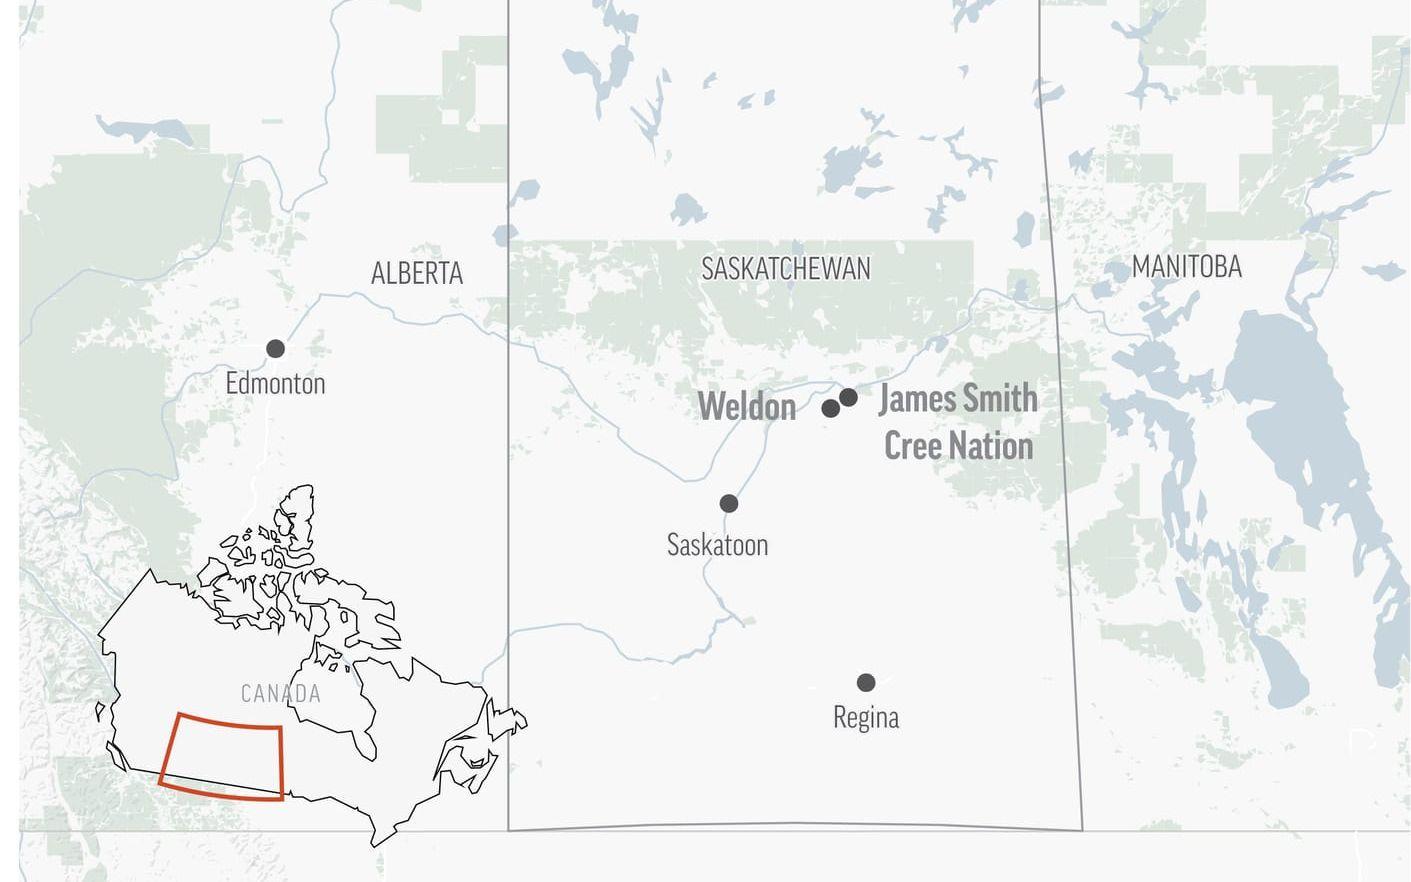 Enligt Blackmore ska samtliga offer ha hittats vid tretton olika brottsplatser i småsamhällena James Smith Cree Nation och Weldon.